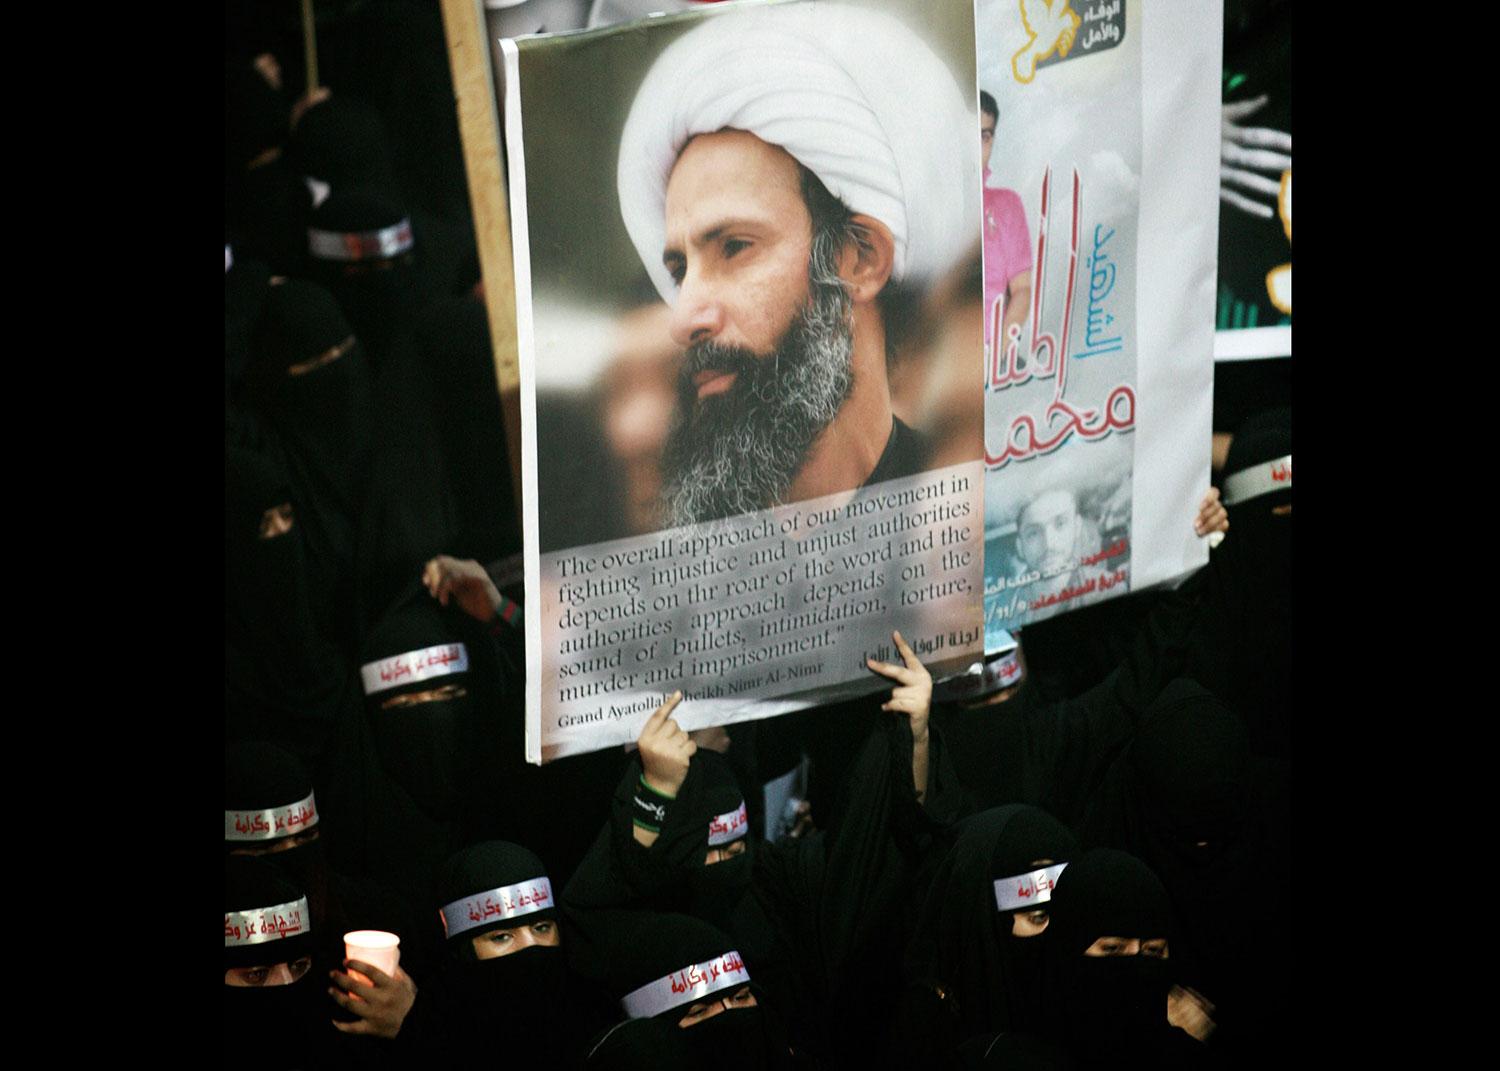 Den shiitiske religiöse ledaren Nimr al-Nimr, som varit en högljudd kritiker av den saudiska ledningen, är en av de avrättade.